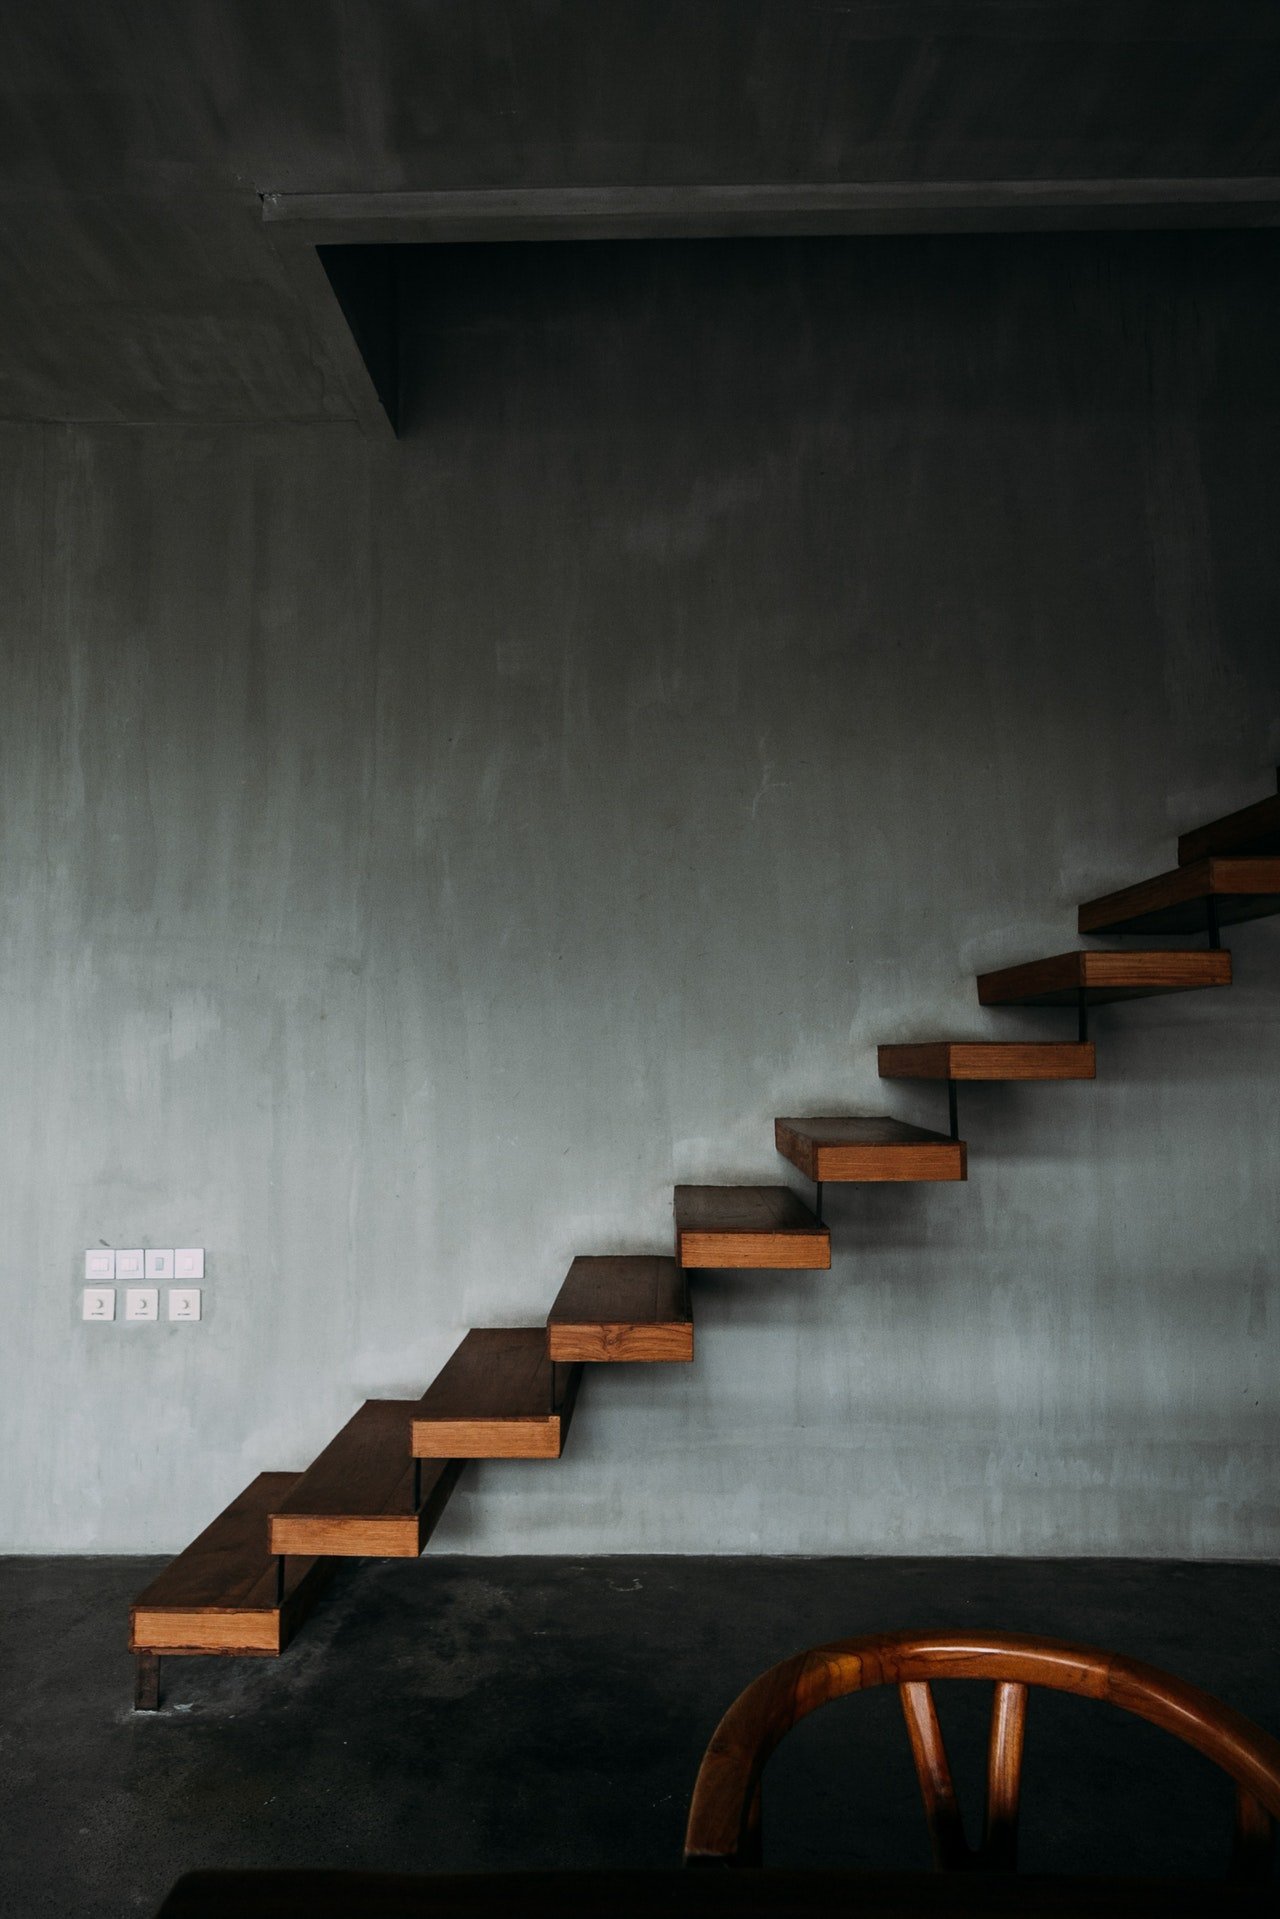 Escaleras hacia un sótano. | Foto: Pexels